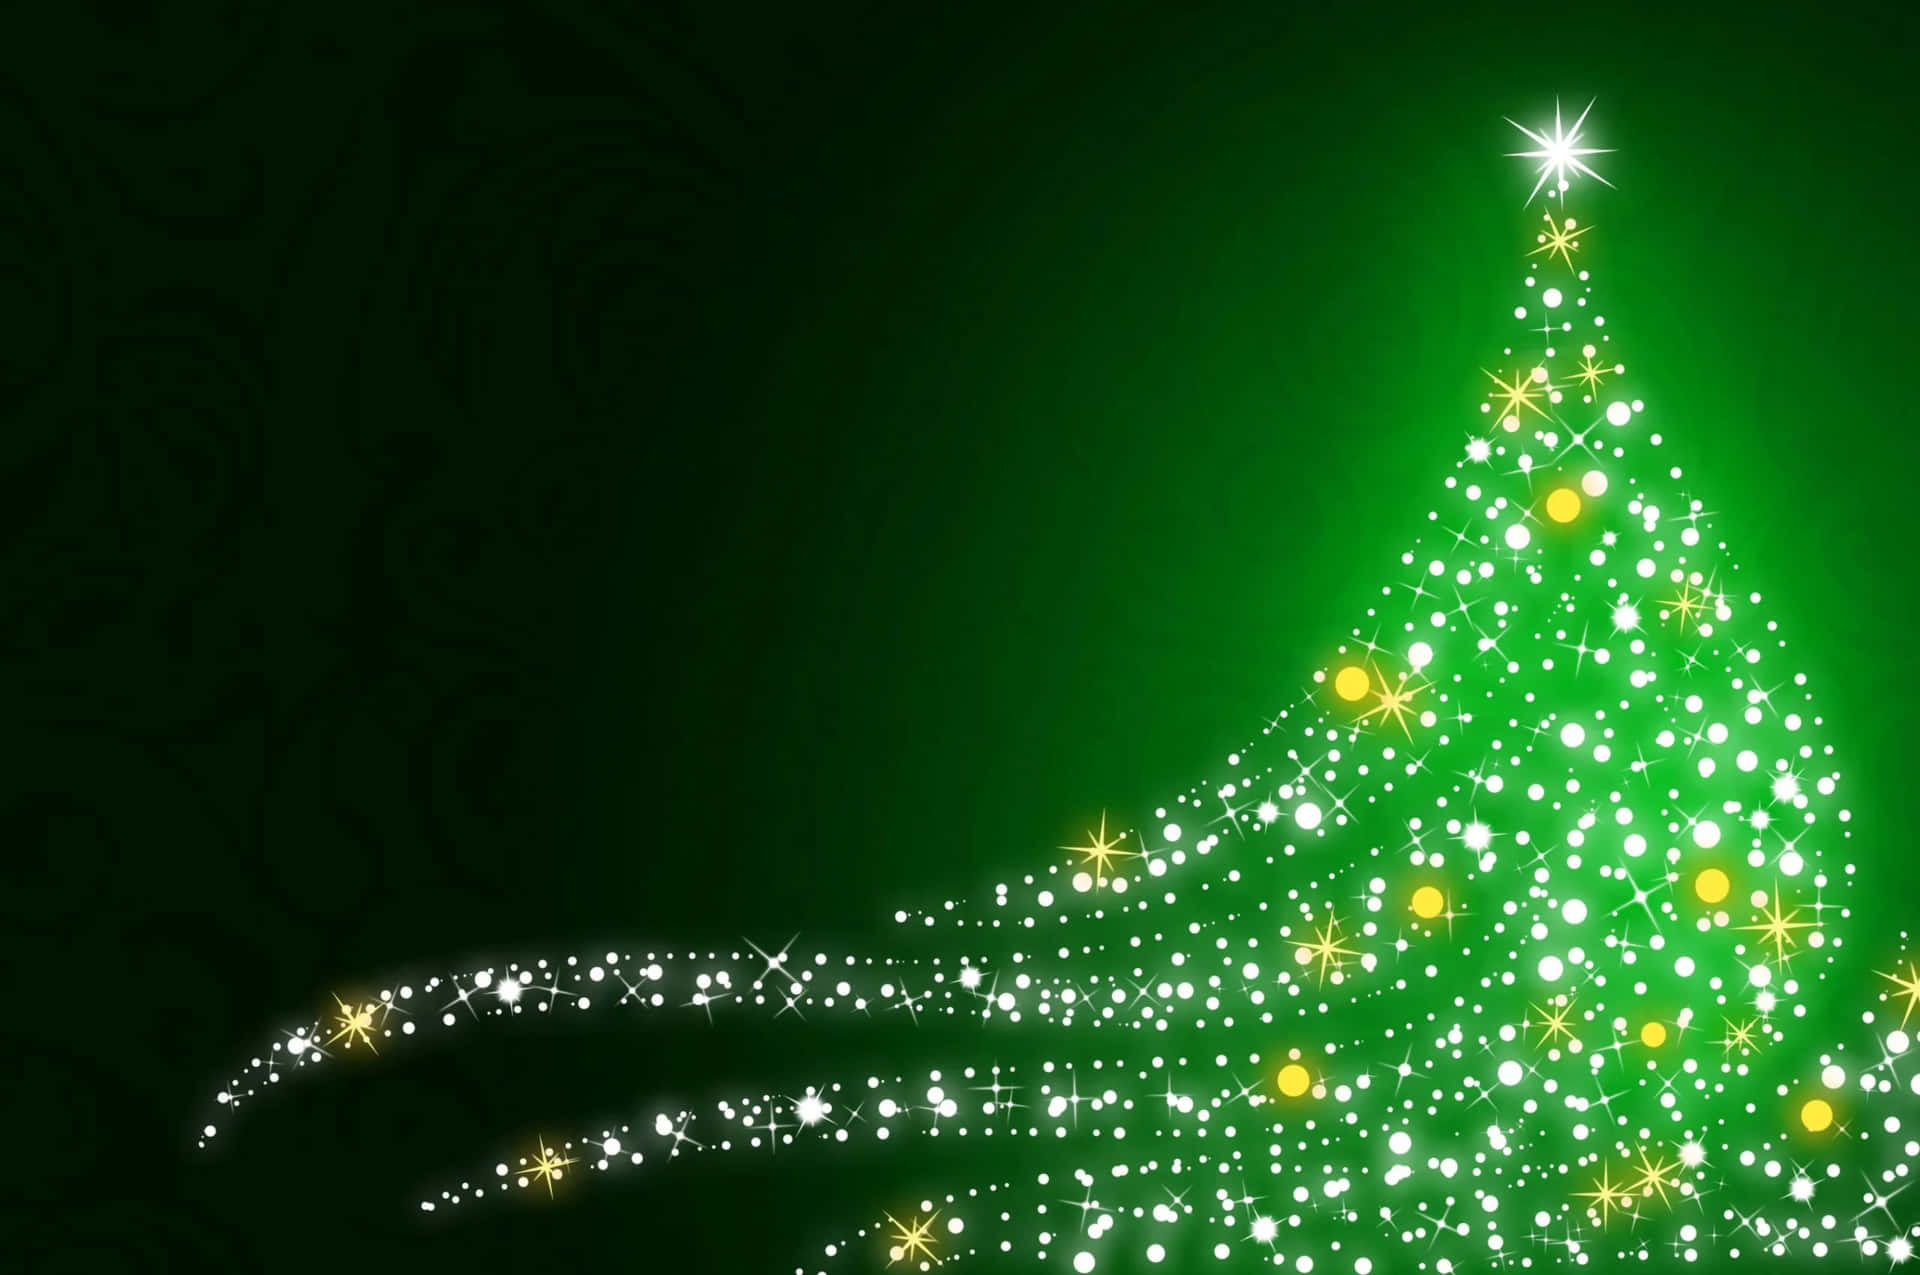 Celebrea Temporada De Festas Tornando-a Alegre E Brilhante Com Um Wallpaper De Natal Verde Escuro. Papel de Parede